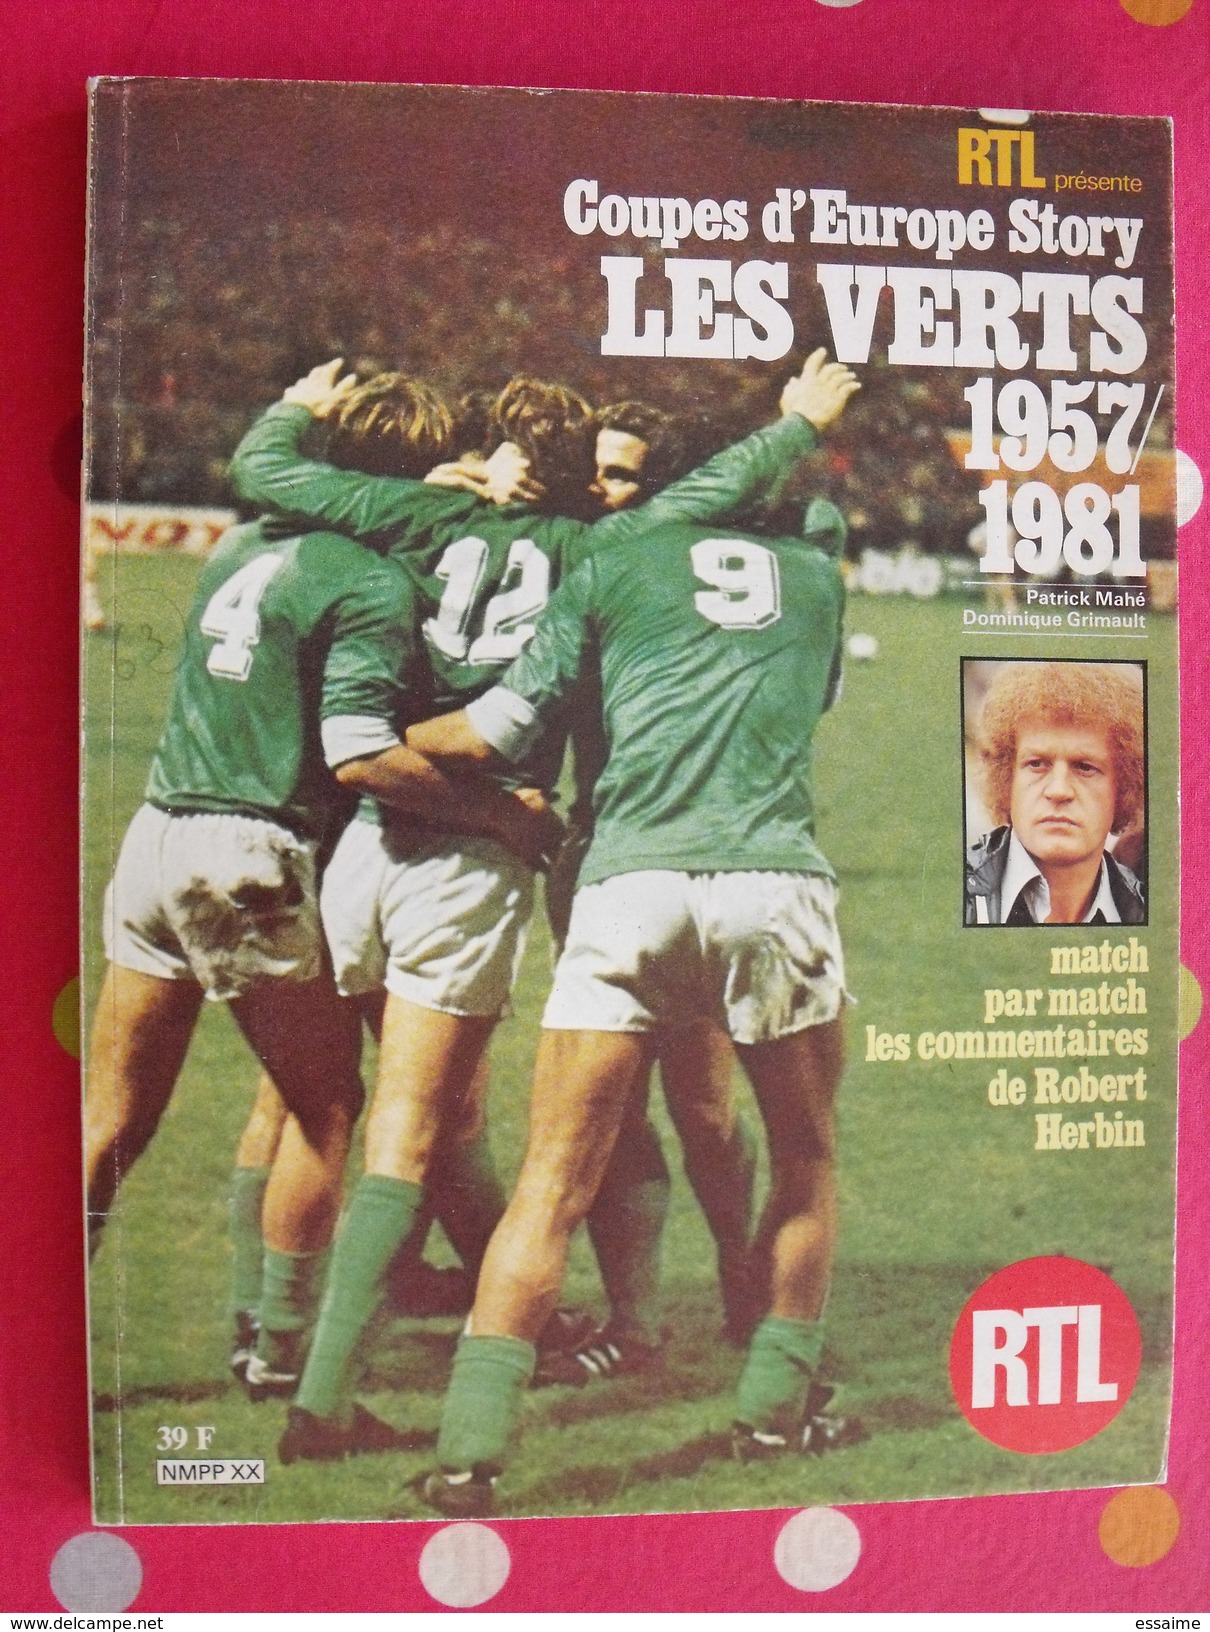 RTL Présente Les Vets 1957/1981. Saint-Etienne. Football. 128 Pages Nombreuses Photos. 1981 - Sport